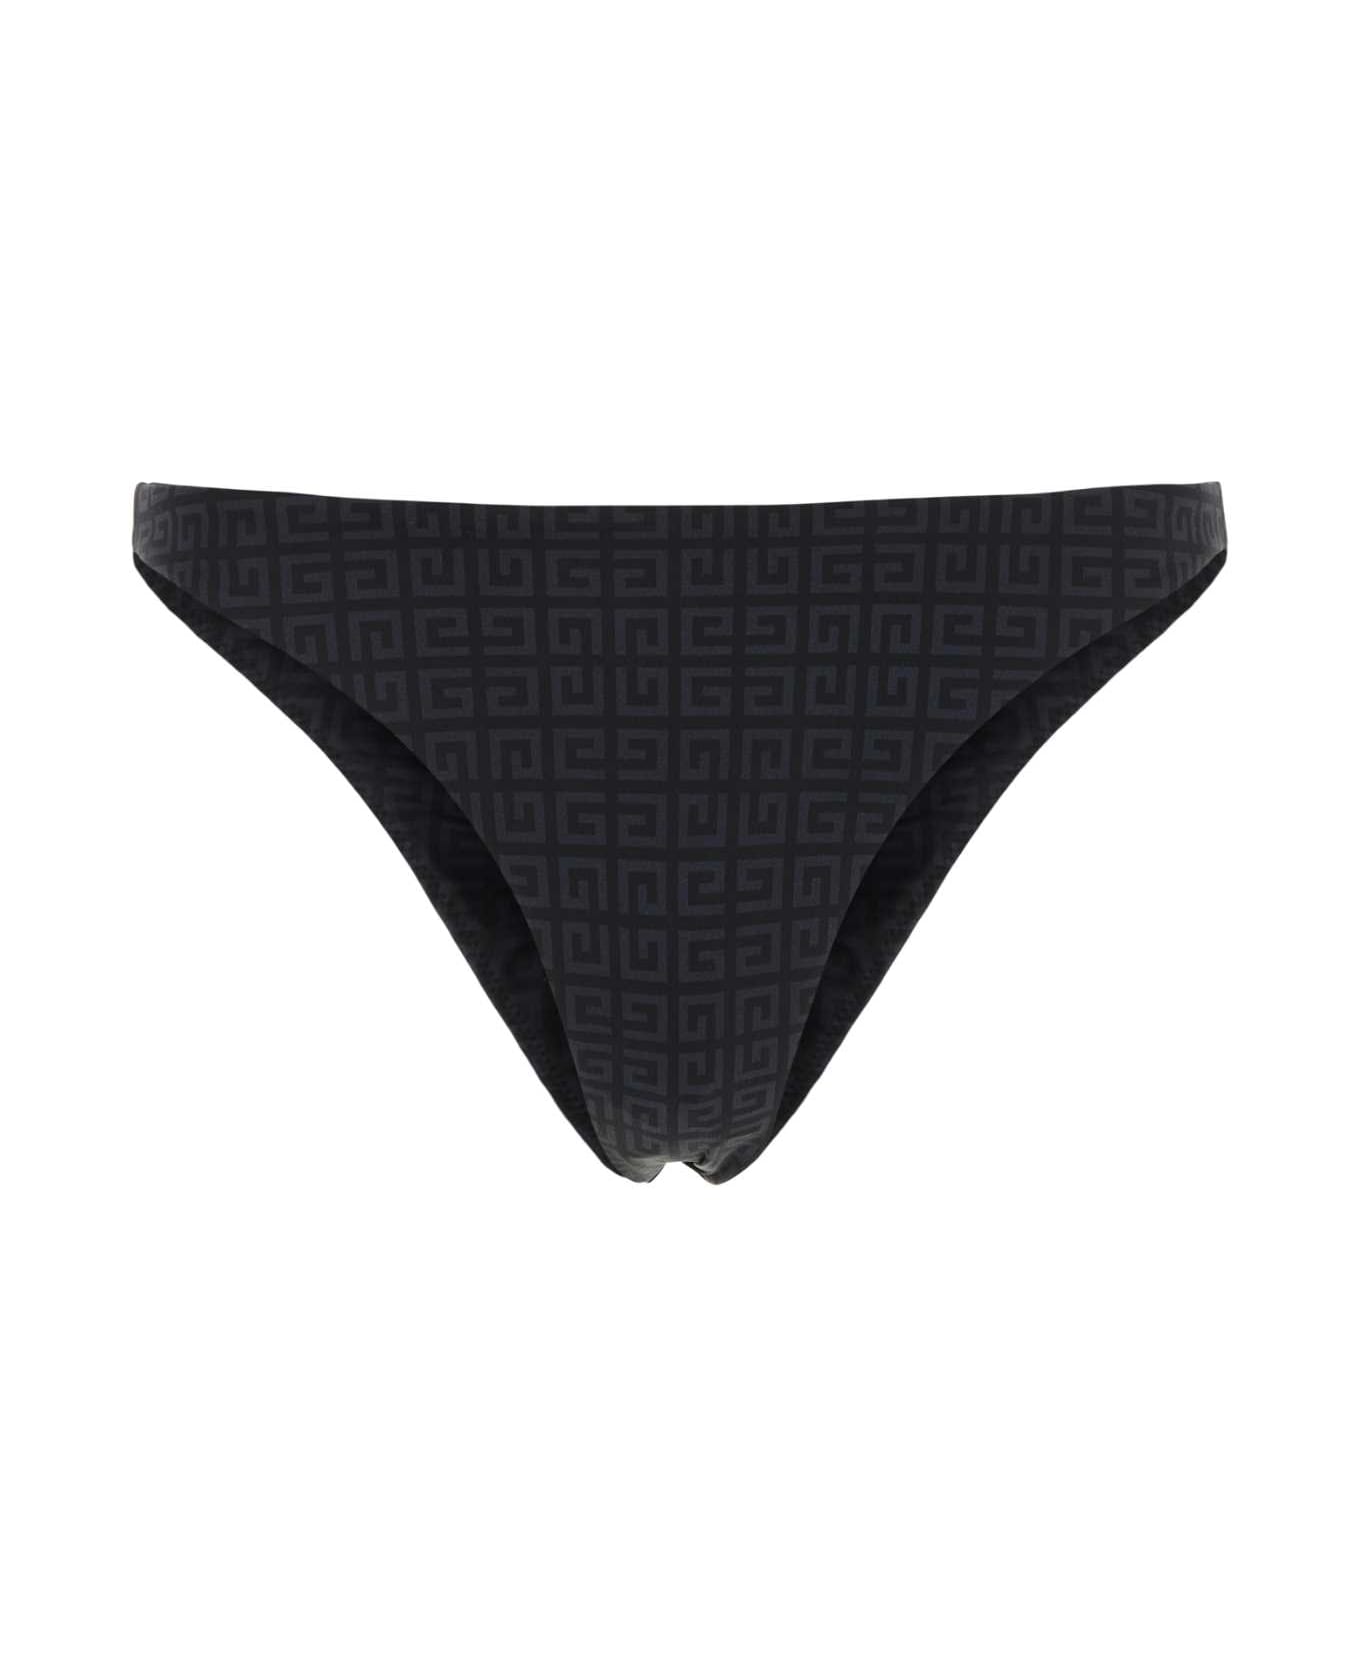 Givenchy Printed Stretch Nylon Bikini Bottom - BLACKGREY